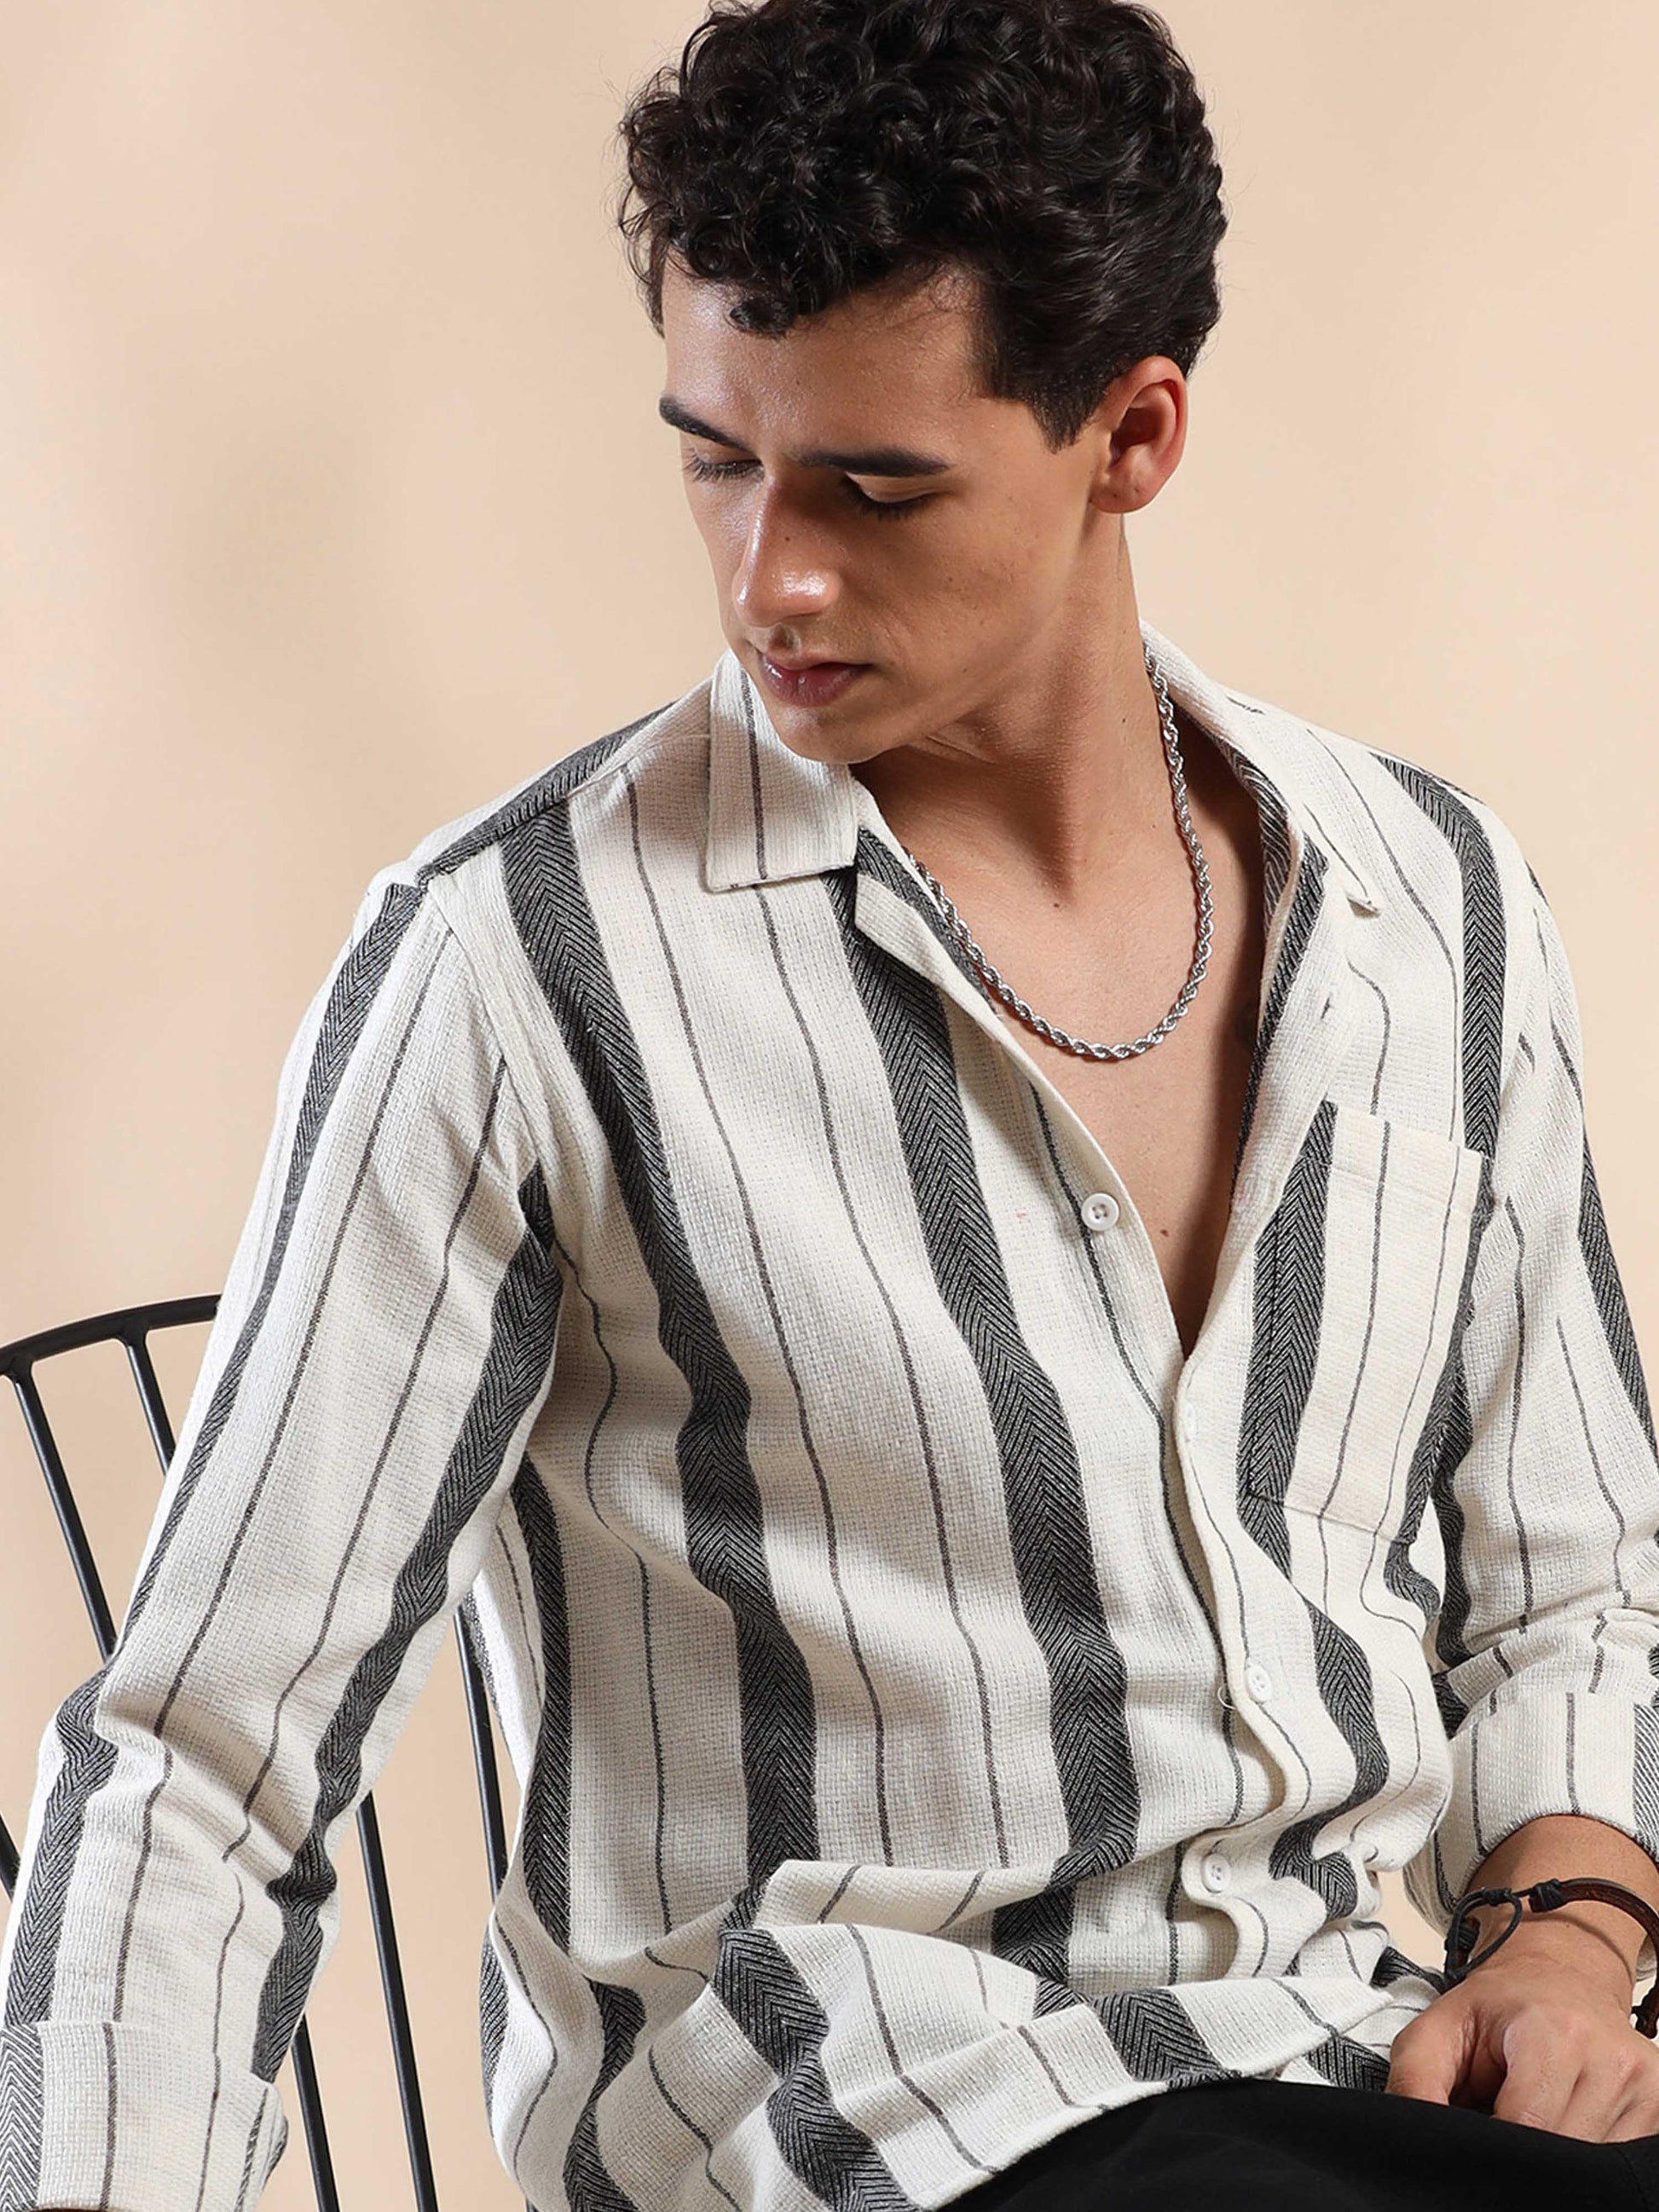 full sleeve black white striped shirt